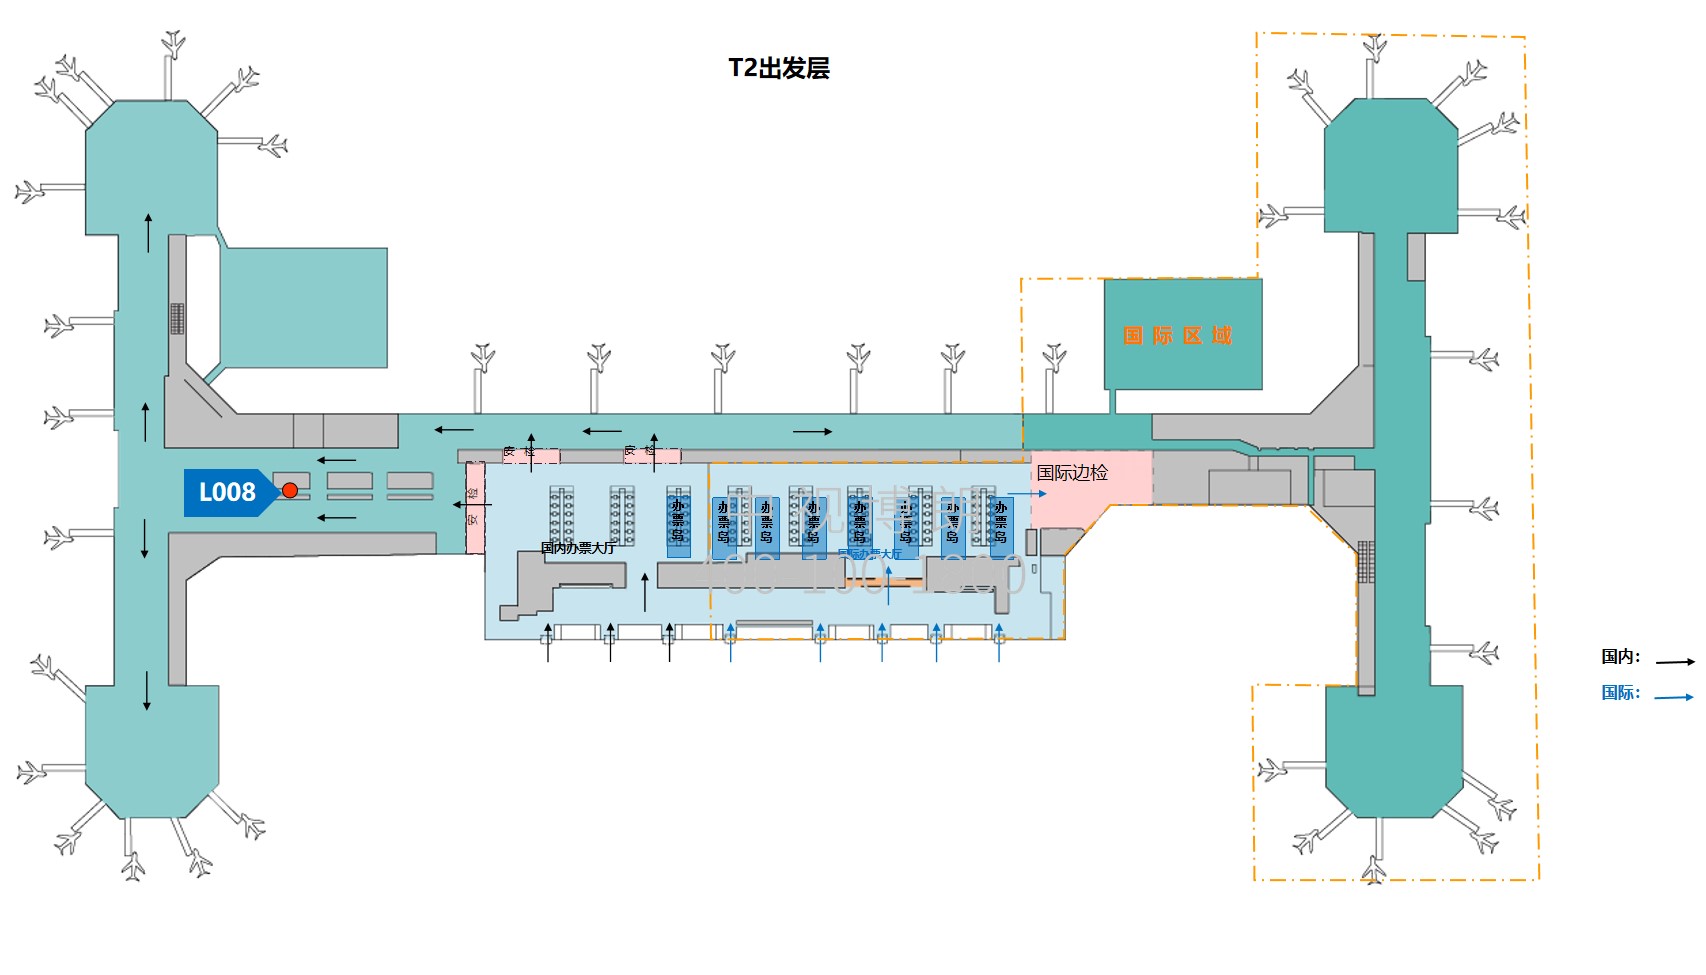 北京首都机场广告-T2 Domestic Departure Corridor Screen L008位置图